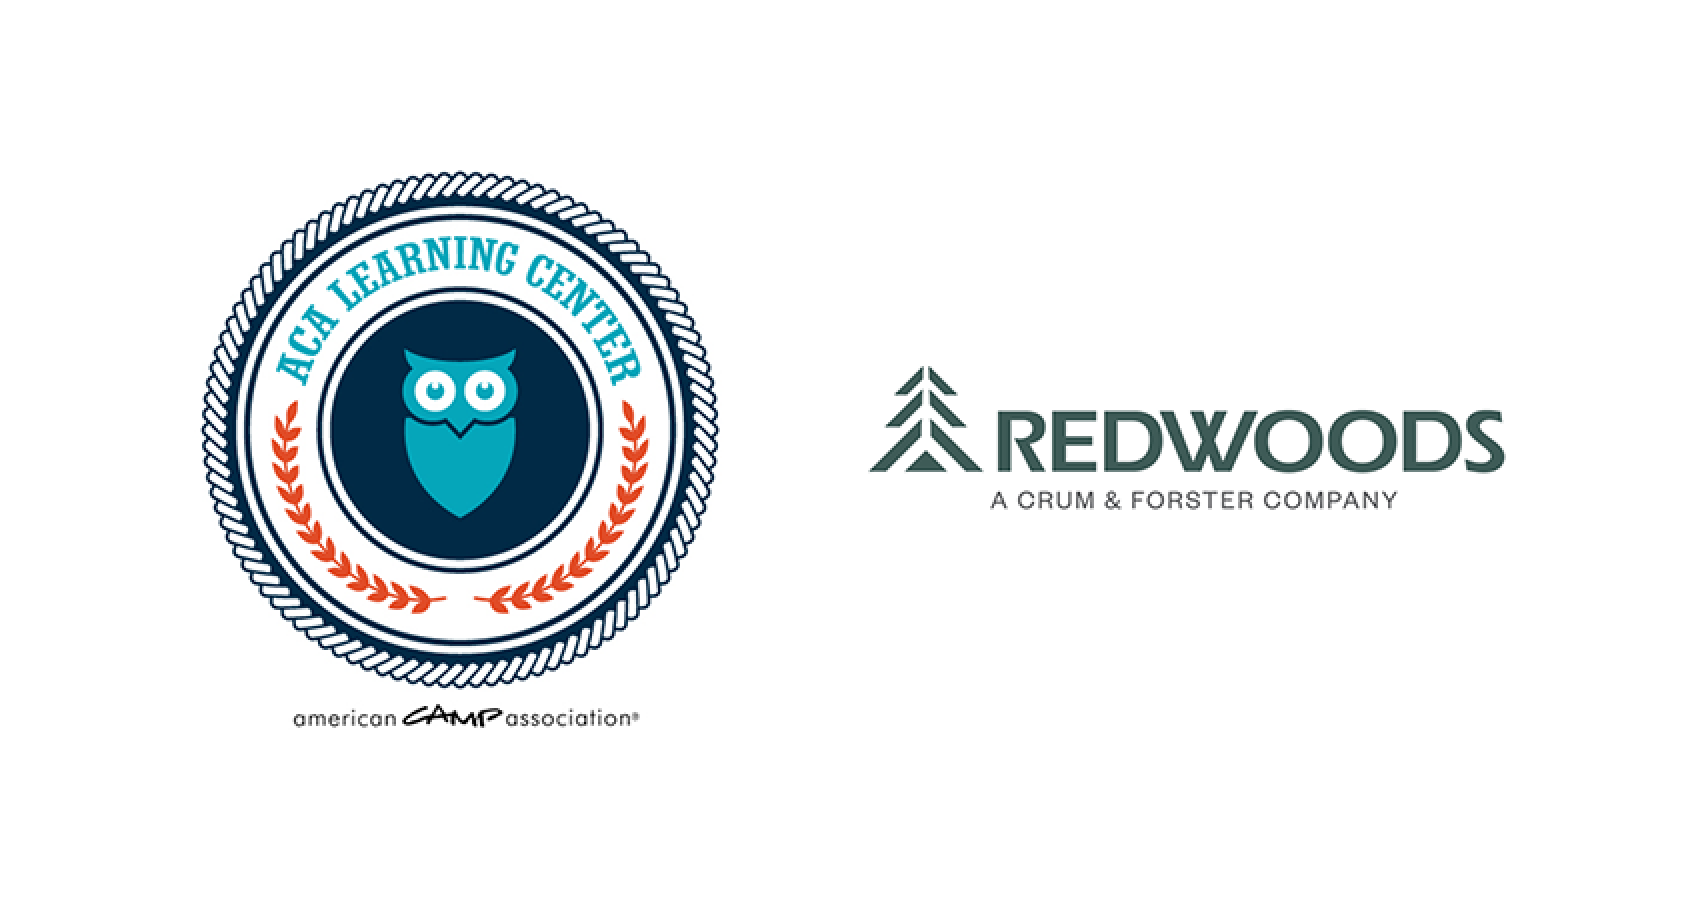 ACA and Redwoods logos